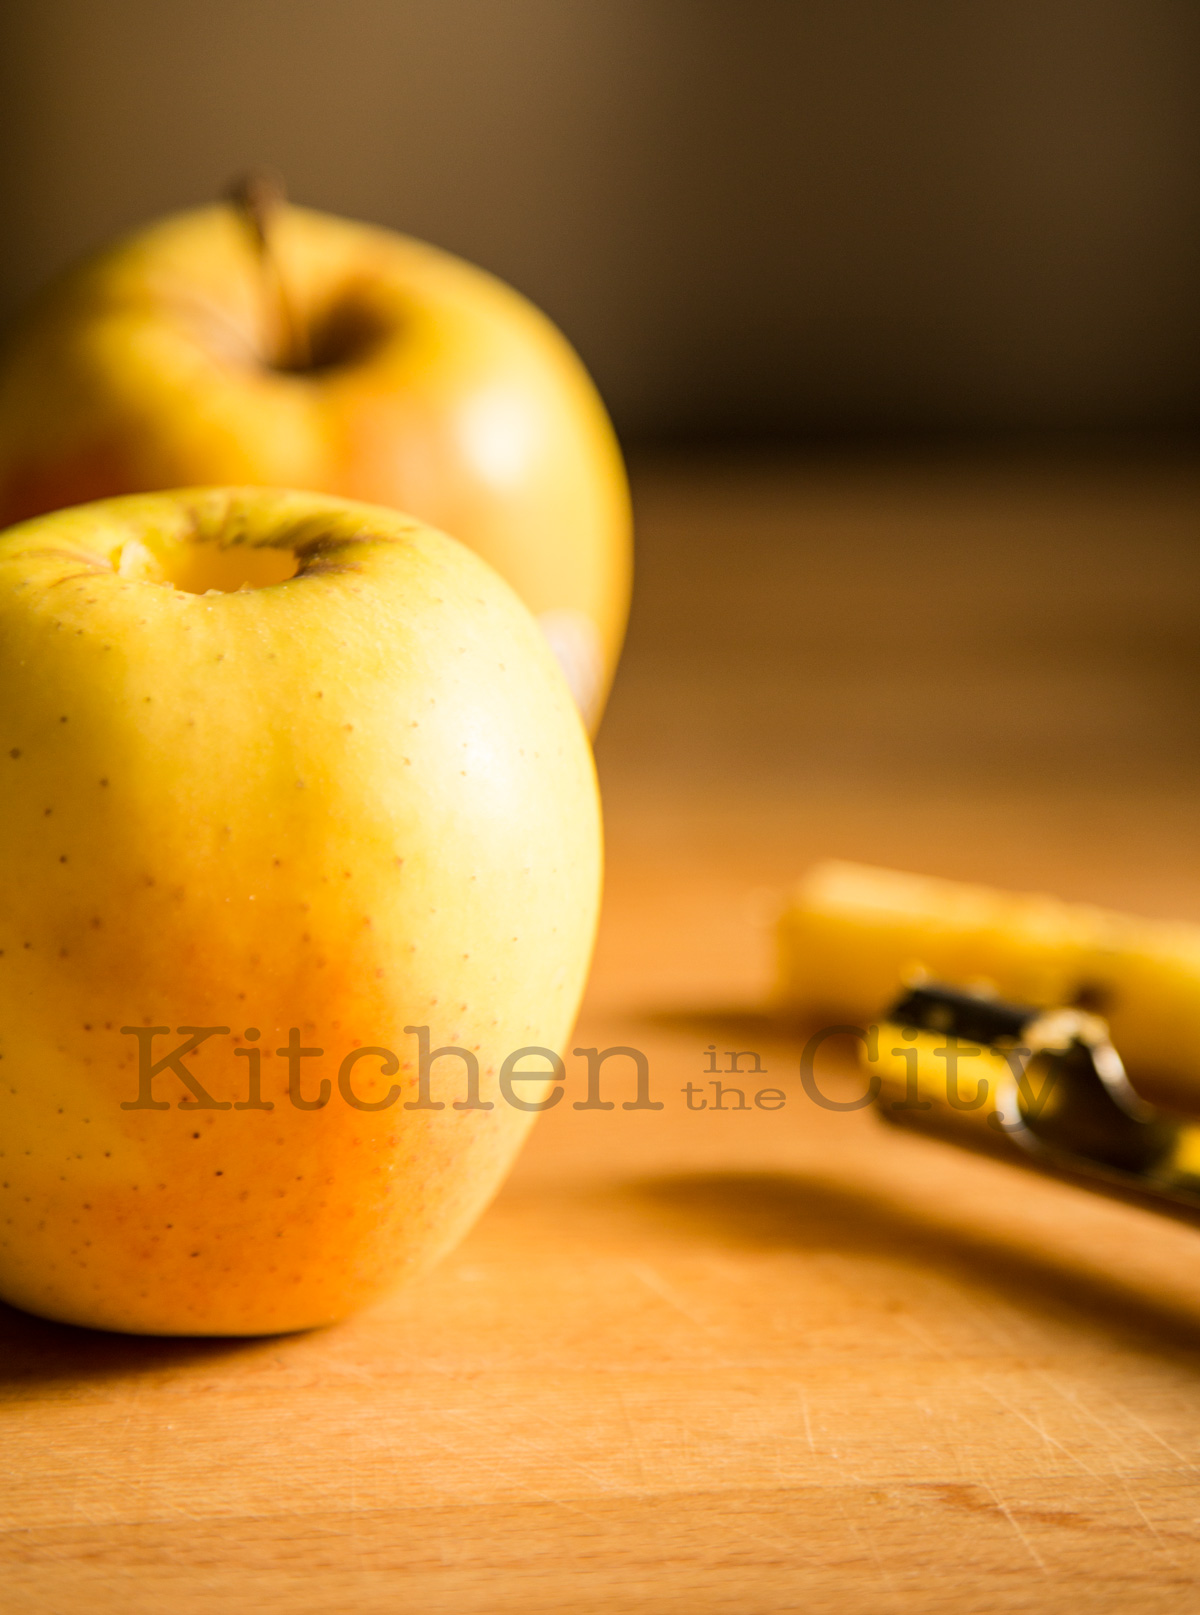 Una mela al forno e il Gigi (Caccia Dominioni) - Kitchen in the City